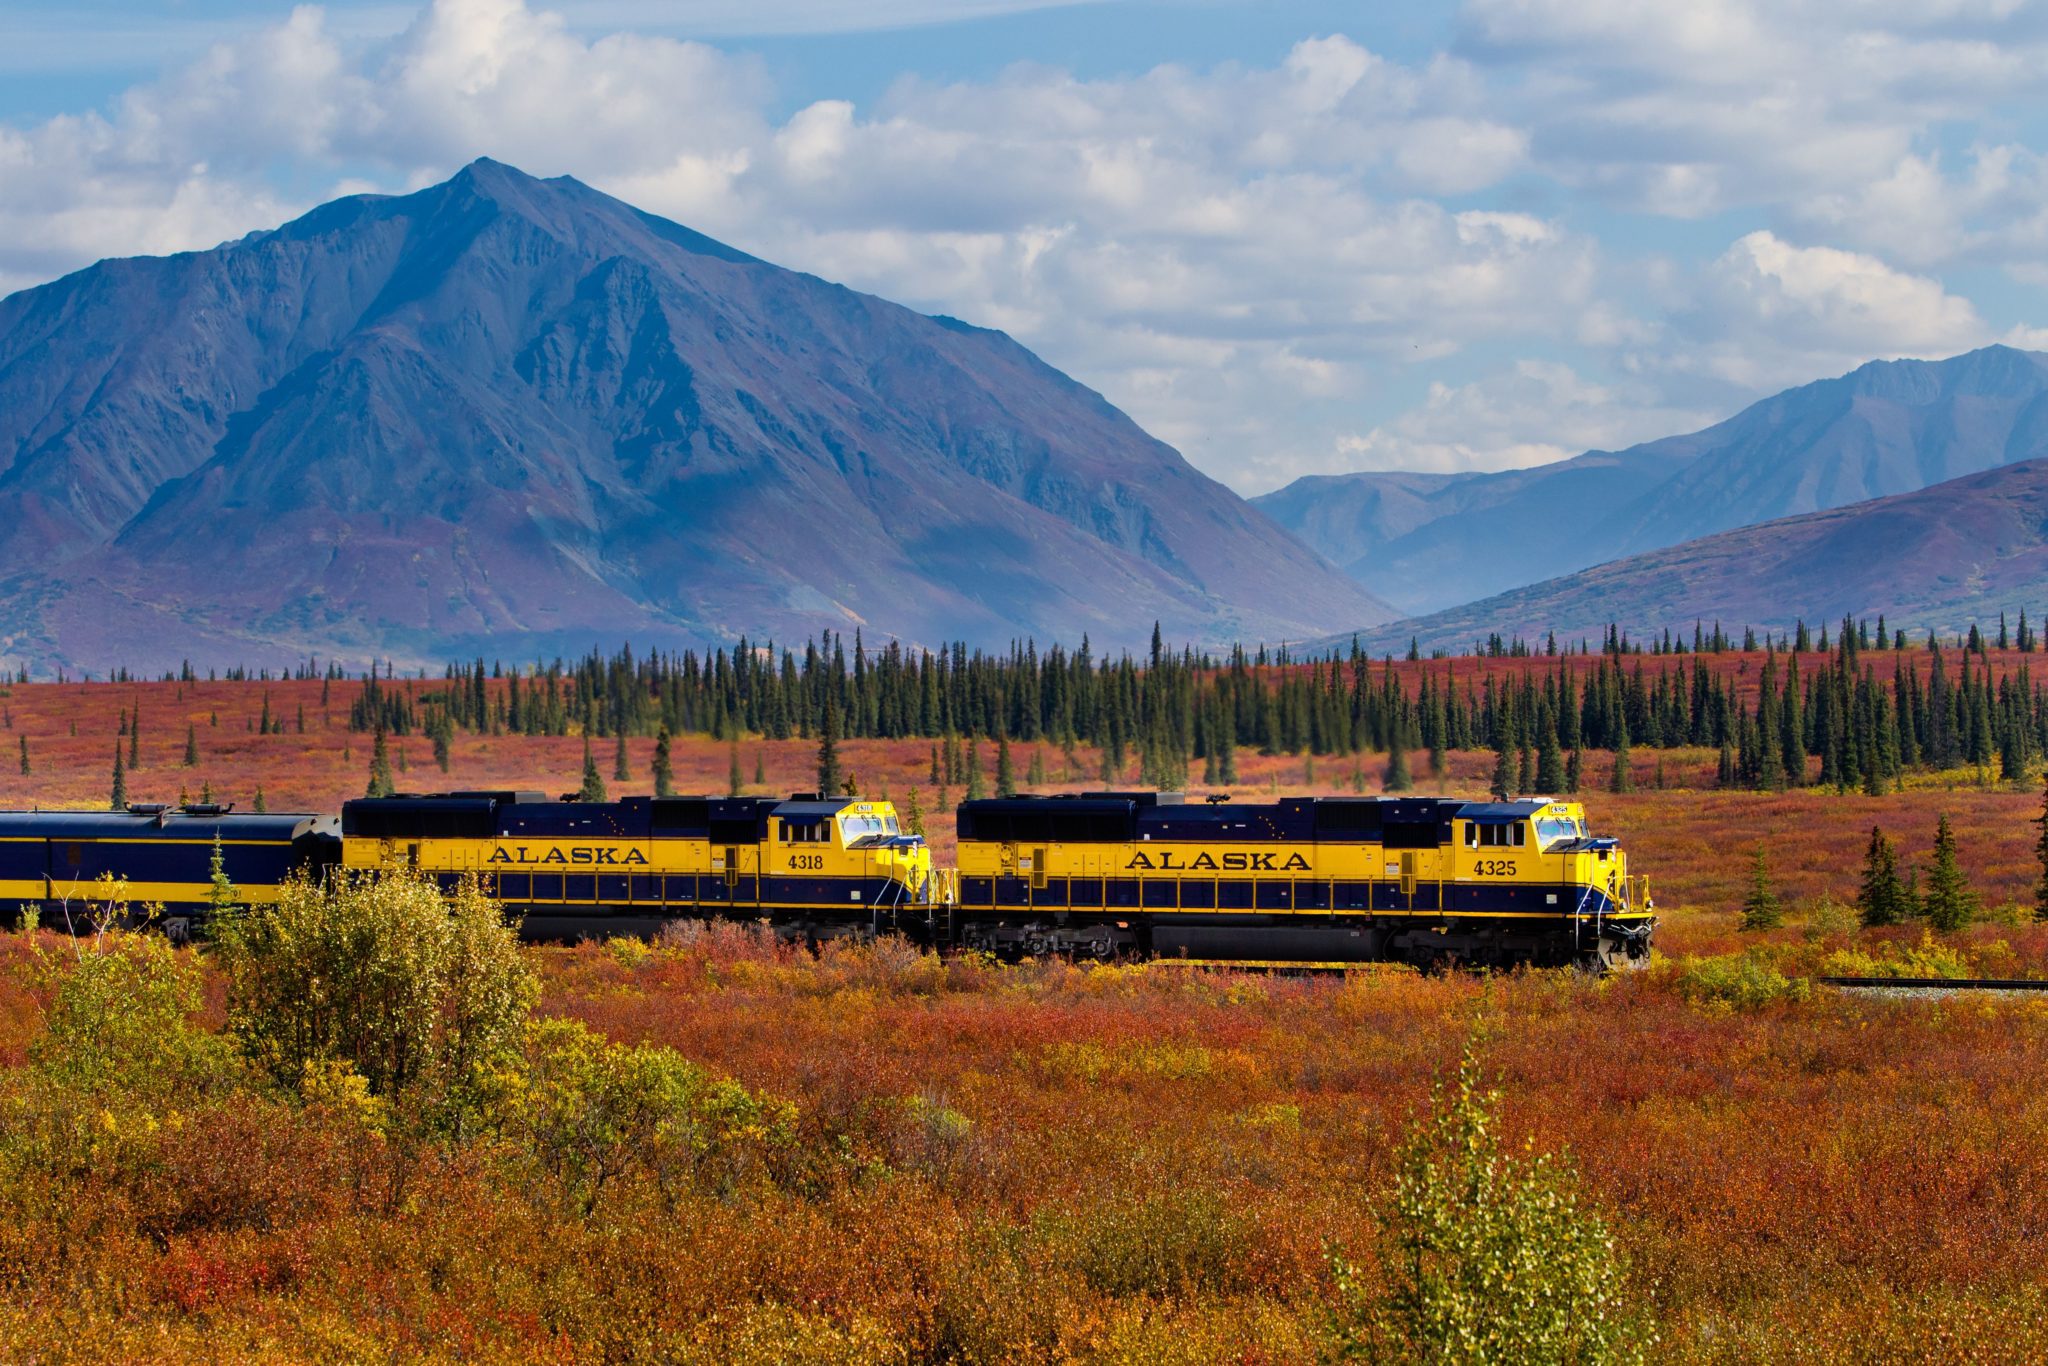 train trips across alaska